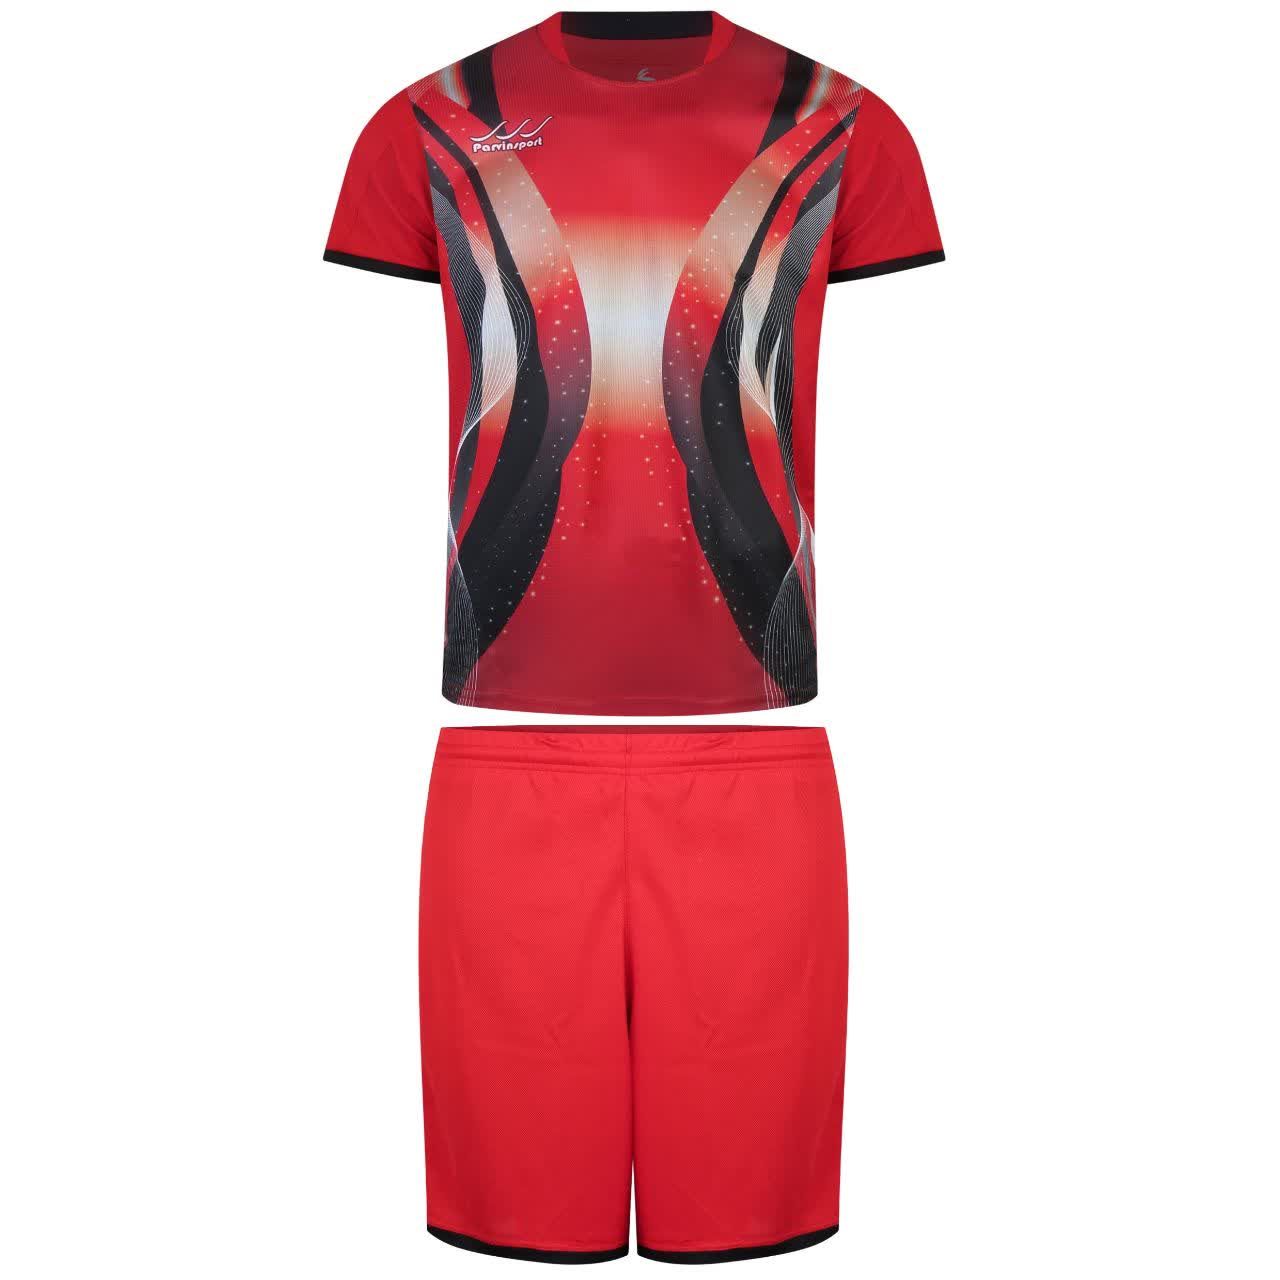 ست تی شرت و شلوارک ورزشی مردانه کالای ورزشی پروین مدل a.s.i.x.6 رنگ قرمز -  - 1